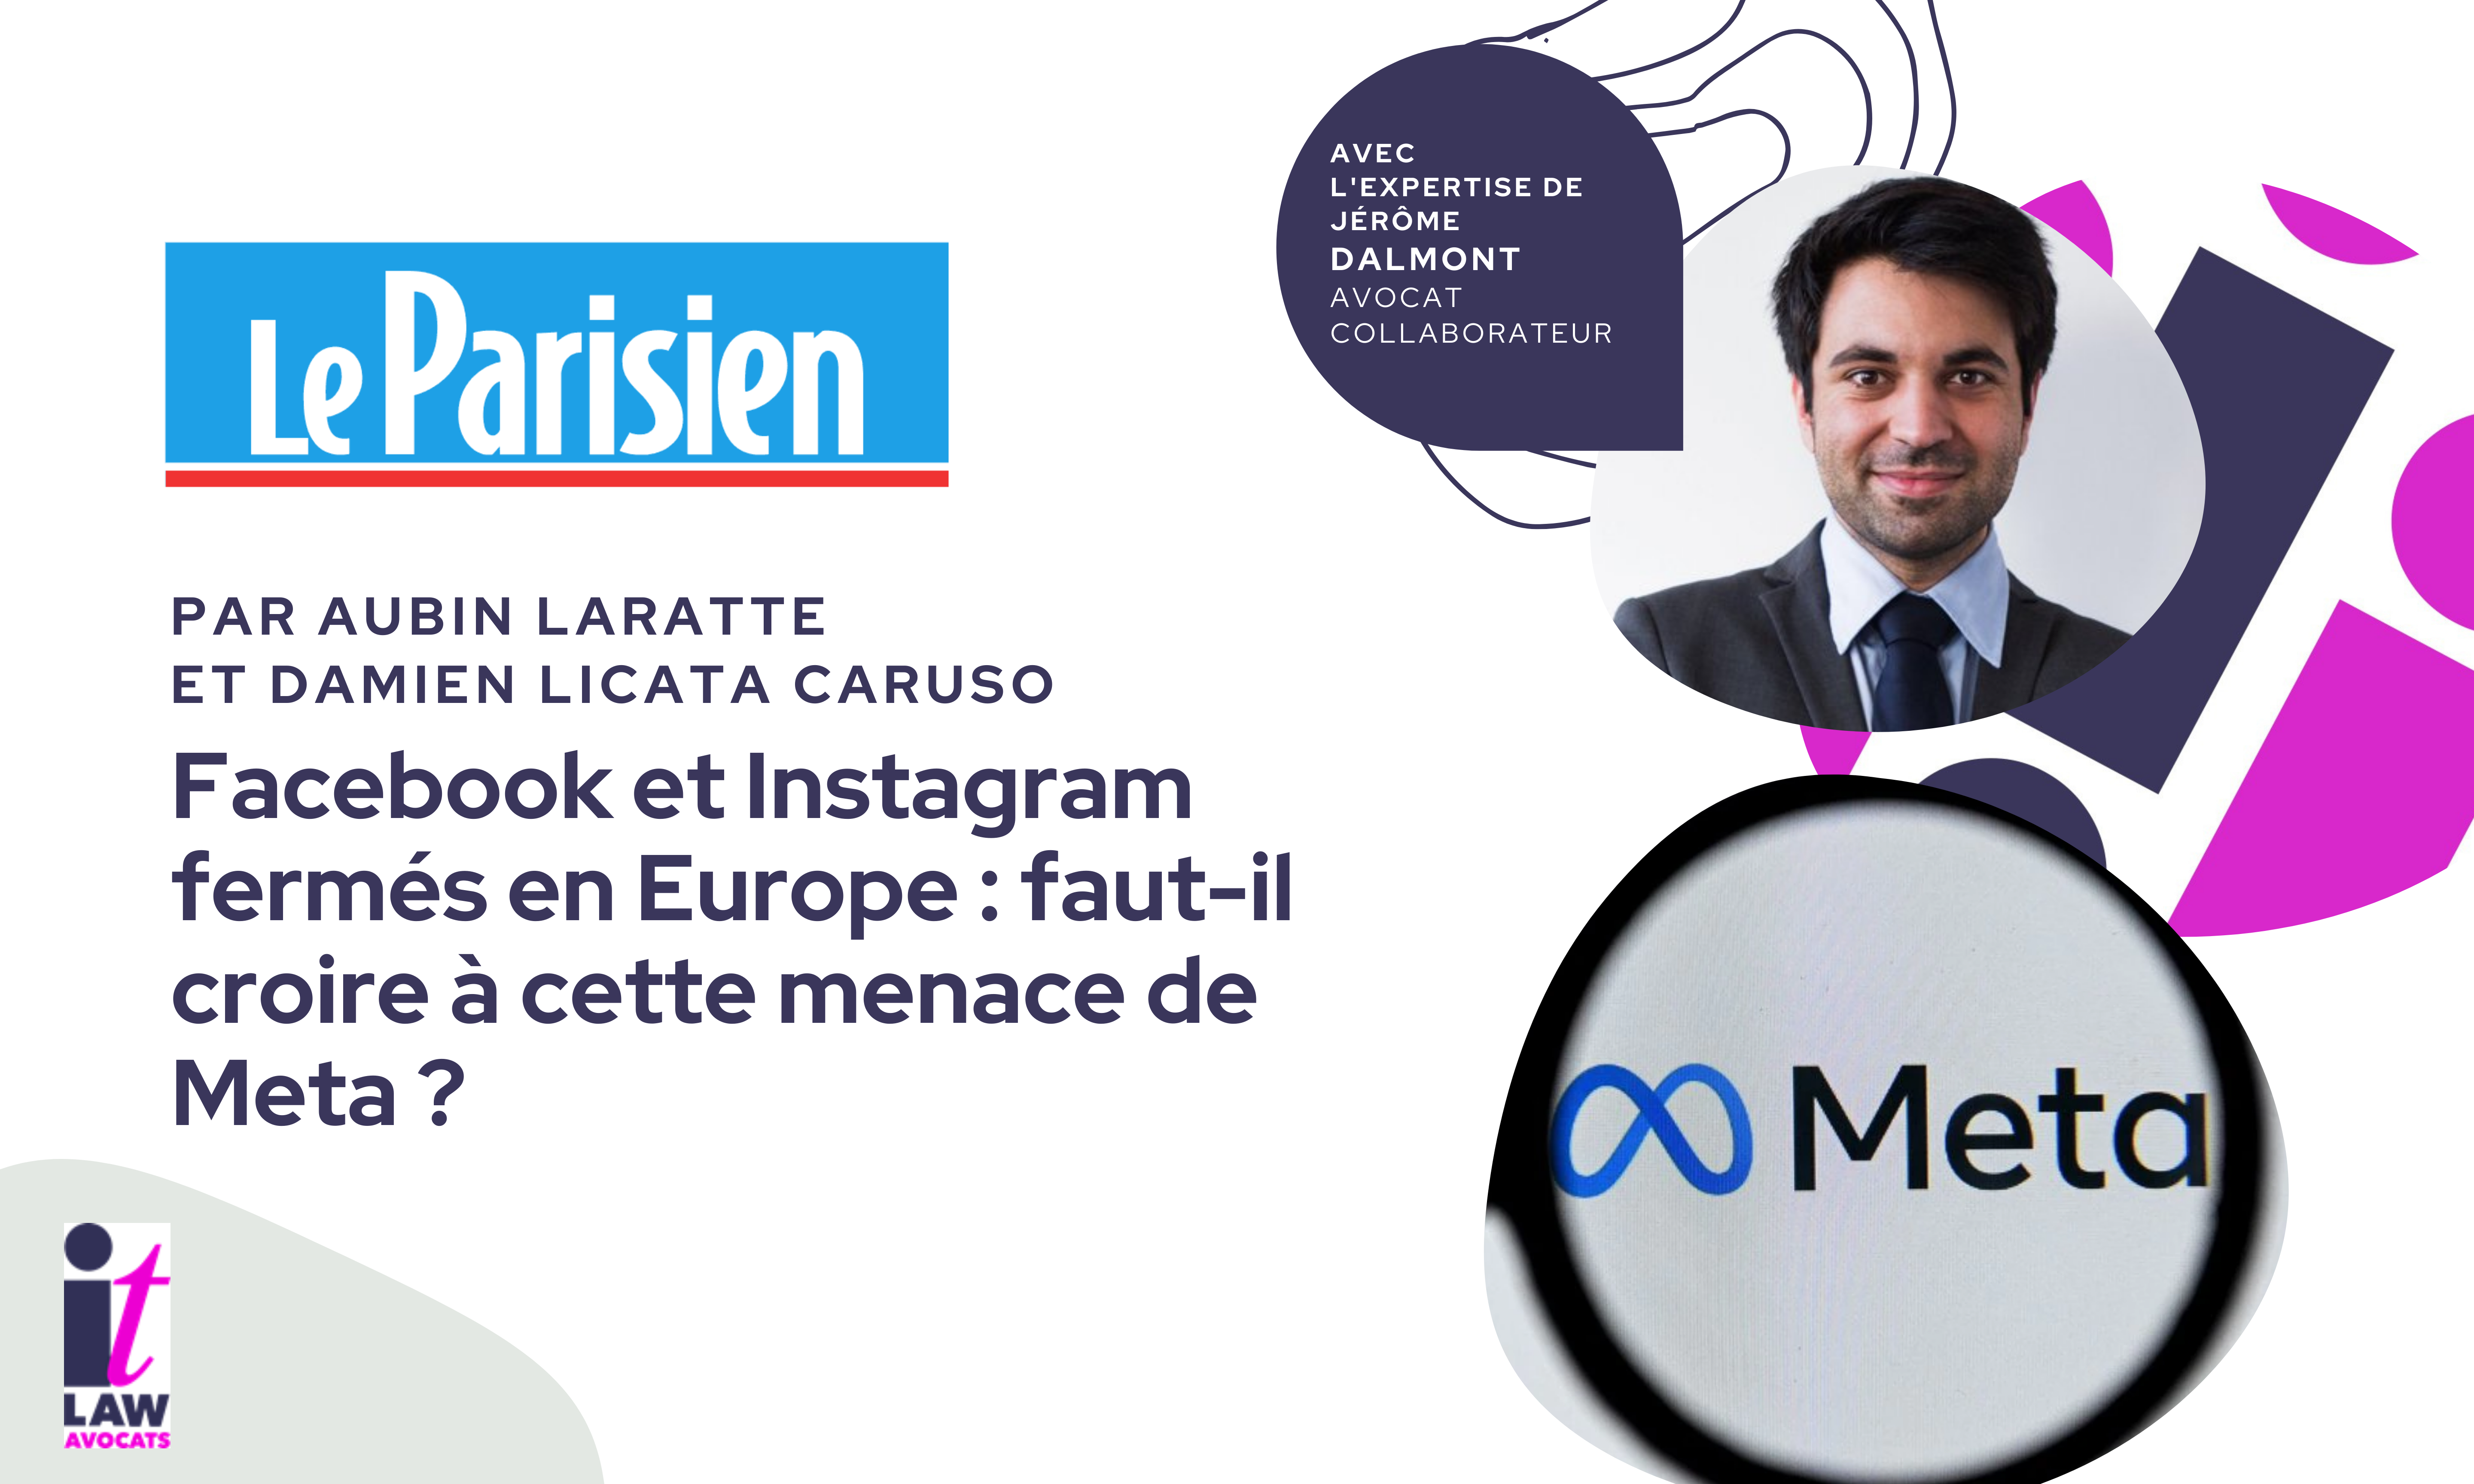 Intervention de Jérôme Dalmont dans Le Parisien : Facebook et Instagram fermés en Europe : faut-il croire à cette menace de Meta ?